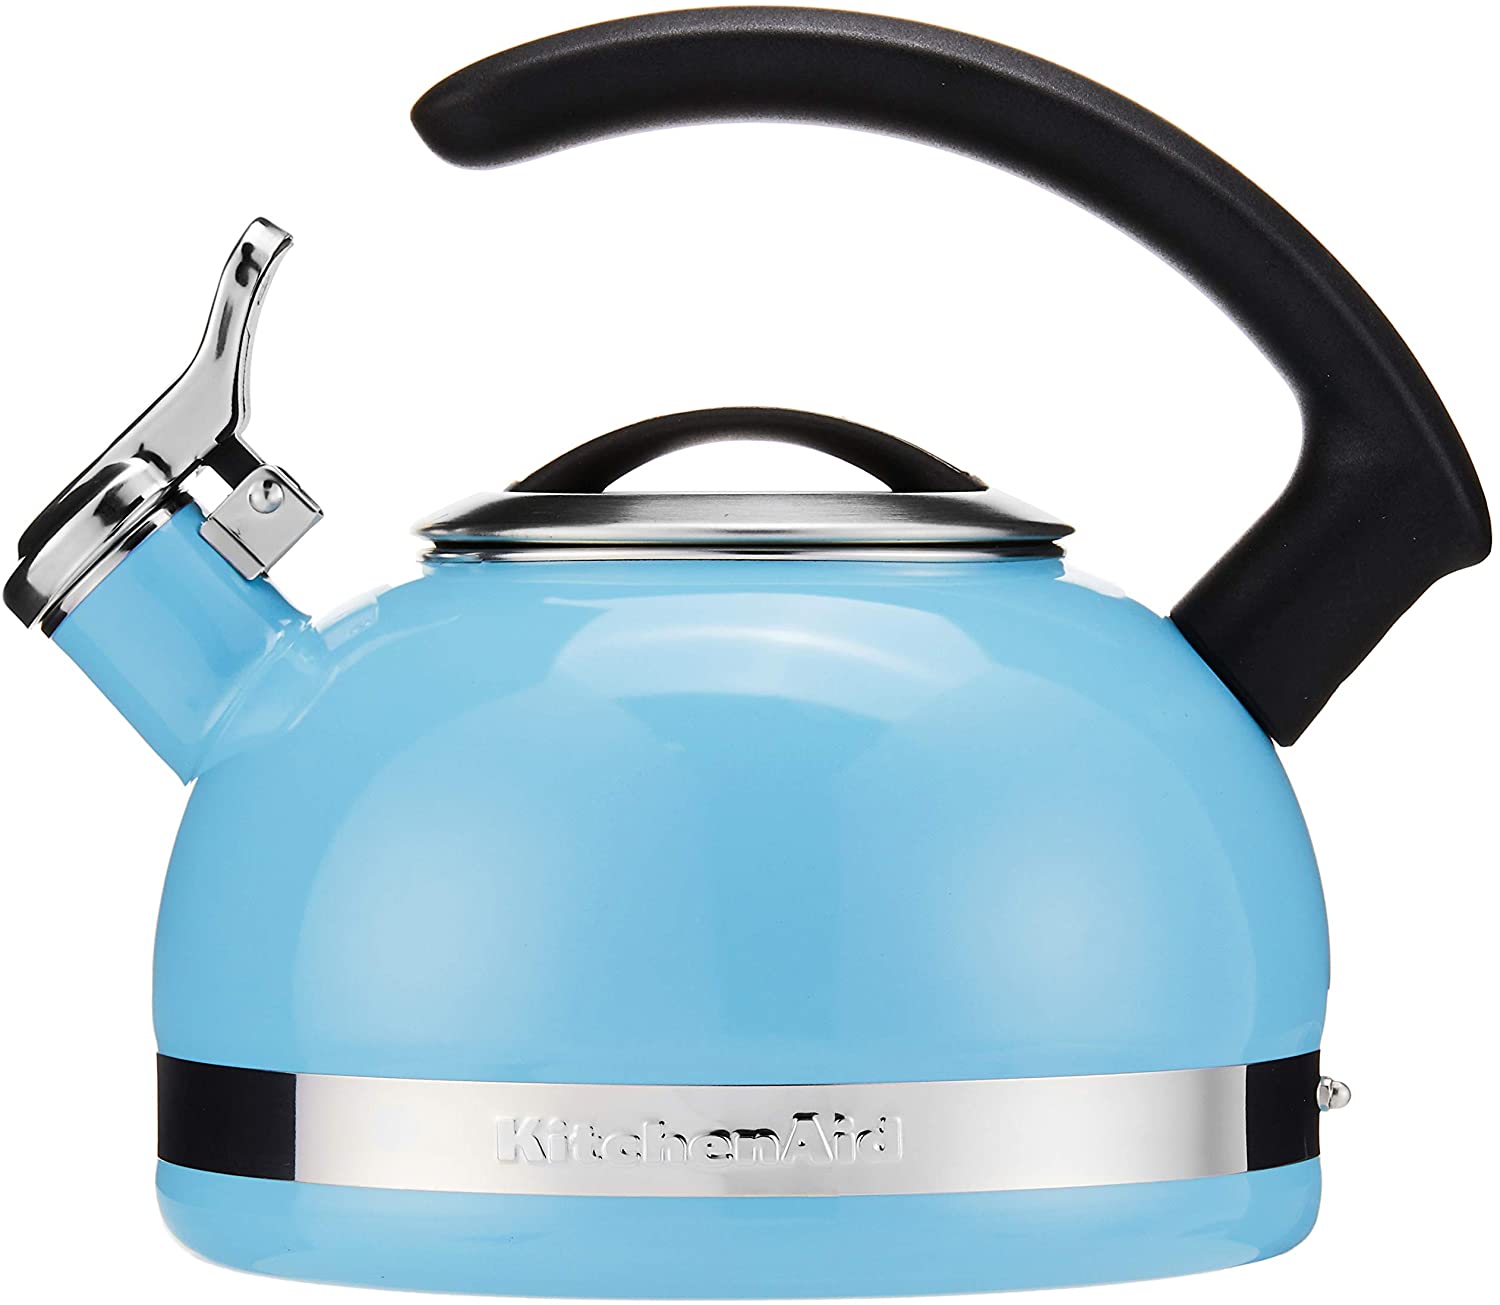 blue kitchenaid tea kettle